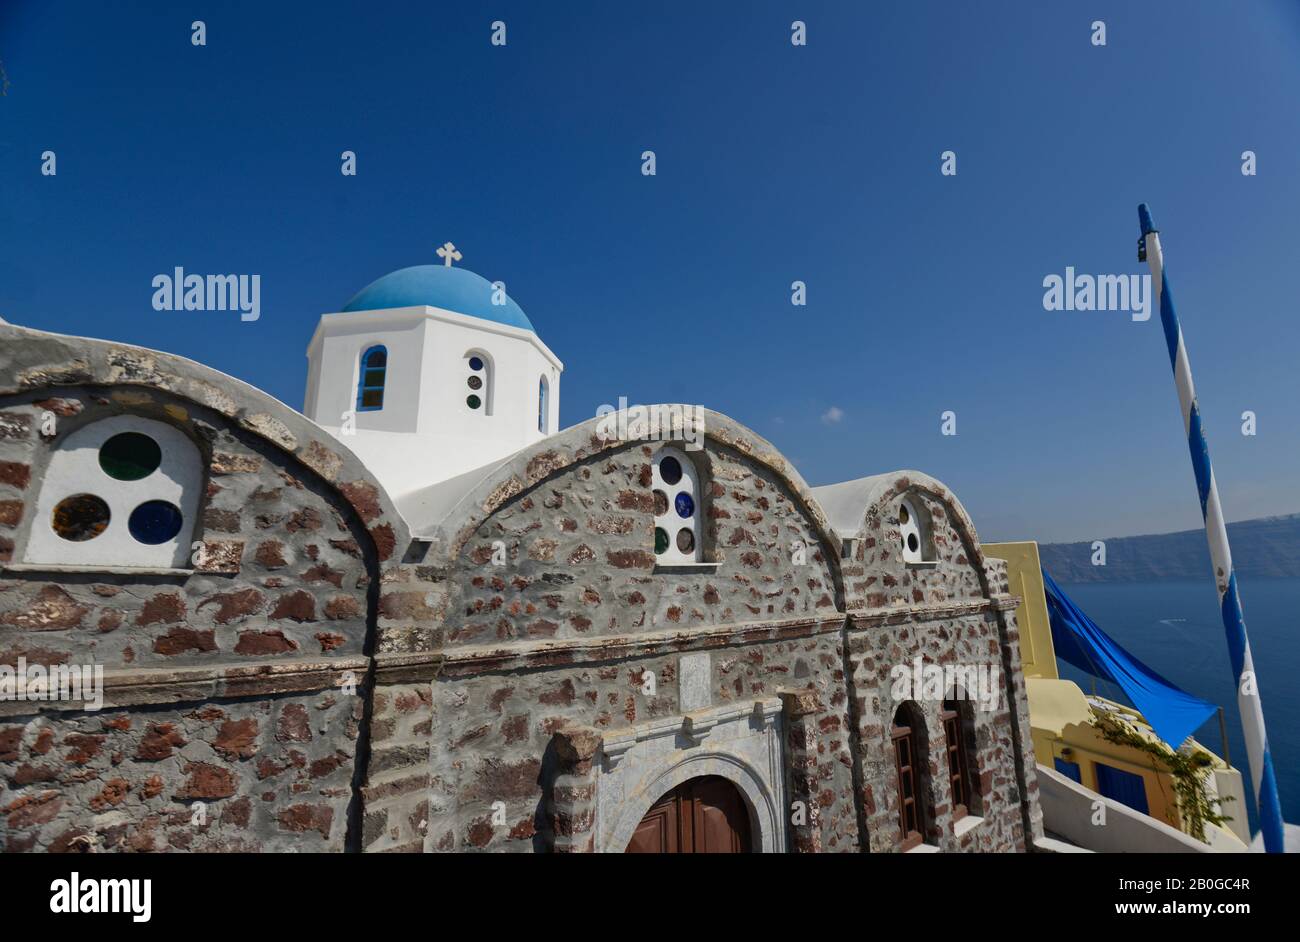 Église typique à dôme bleu à Oia, île de Santorin, Grèce Banque D'Images